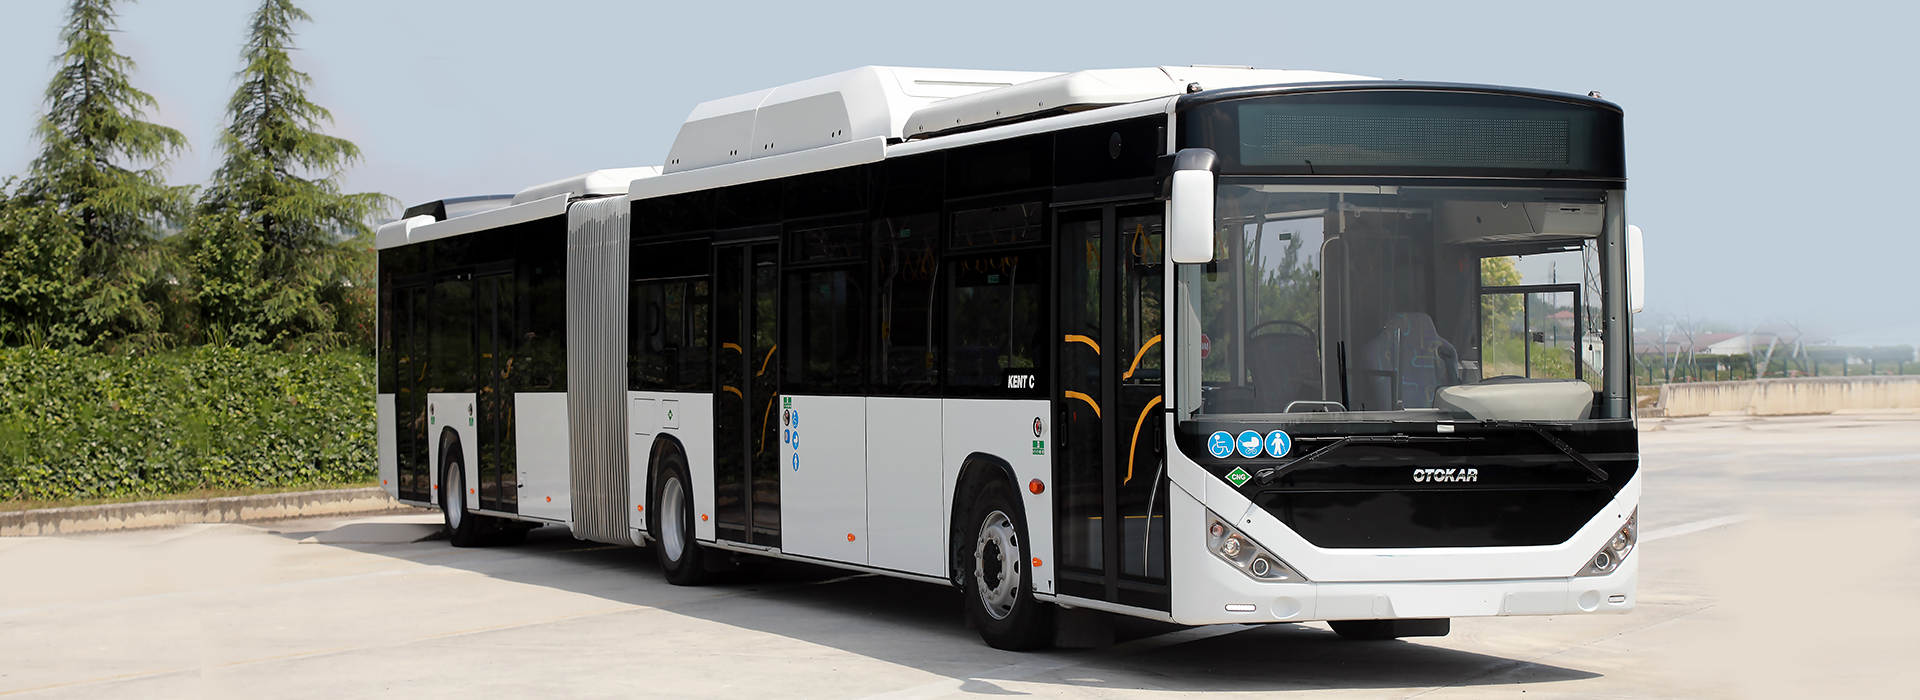 CNG, toplu taşıma otobüslerinin motorları için ideal yakıt olabilir